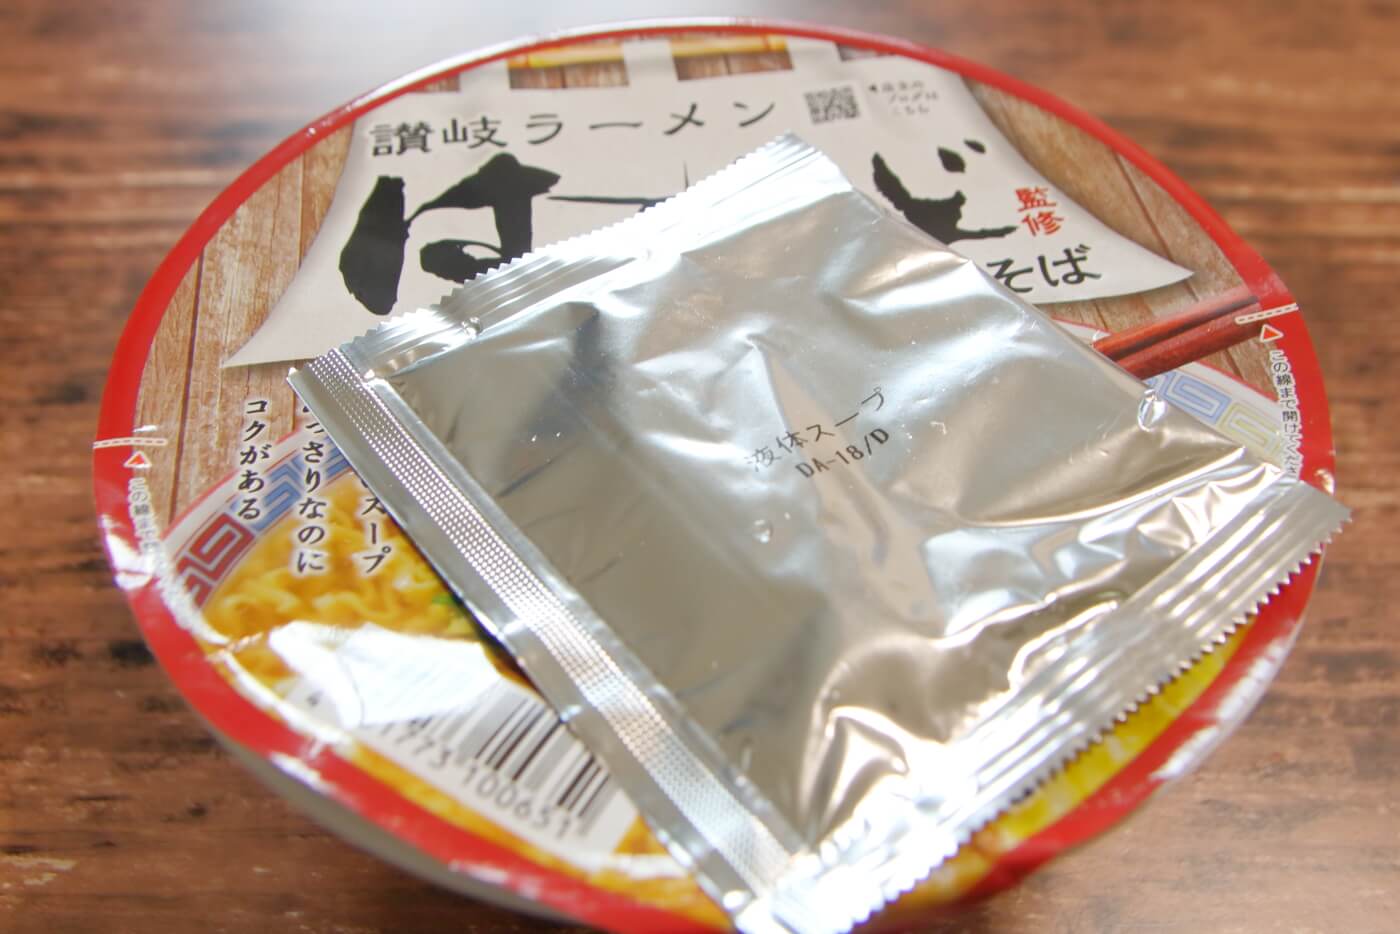 中四国のローソン限定で販売される讃岐ラーメンはまんどカップ麺